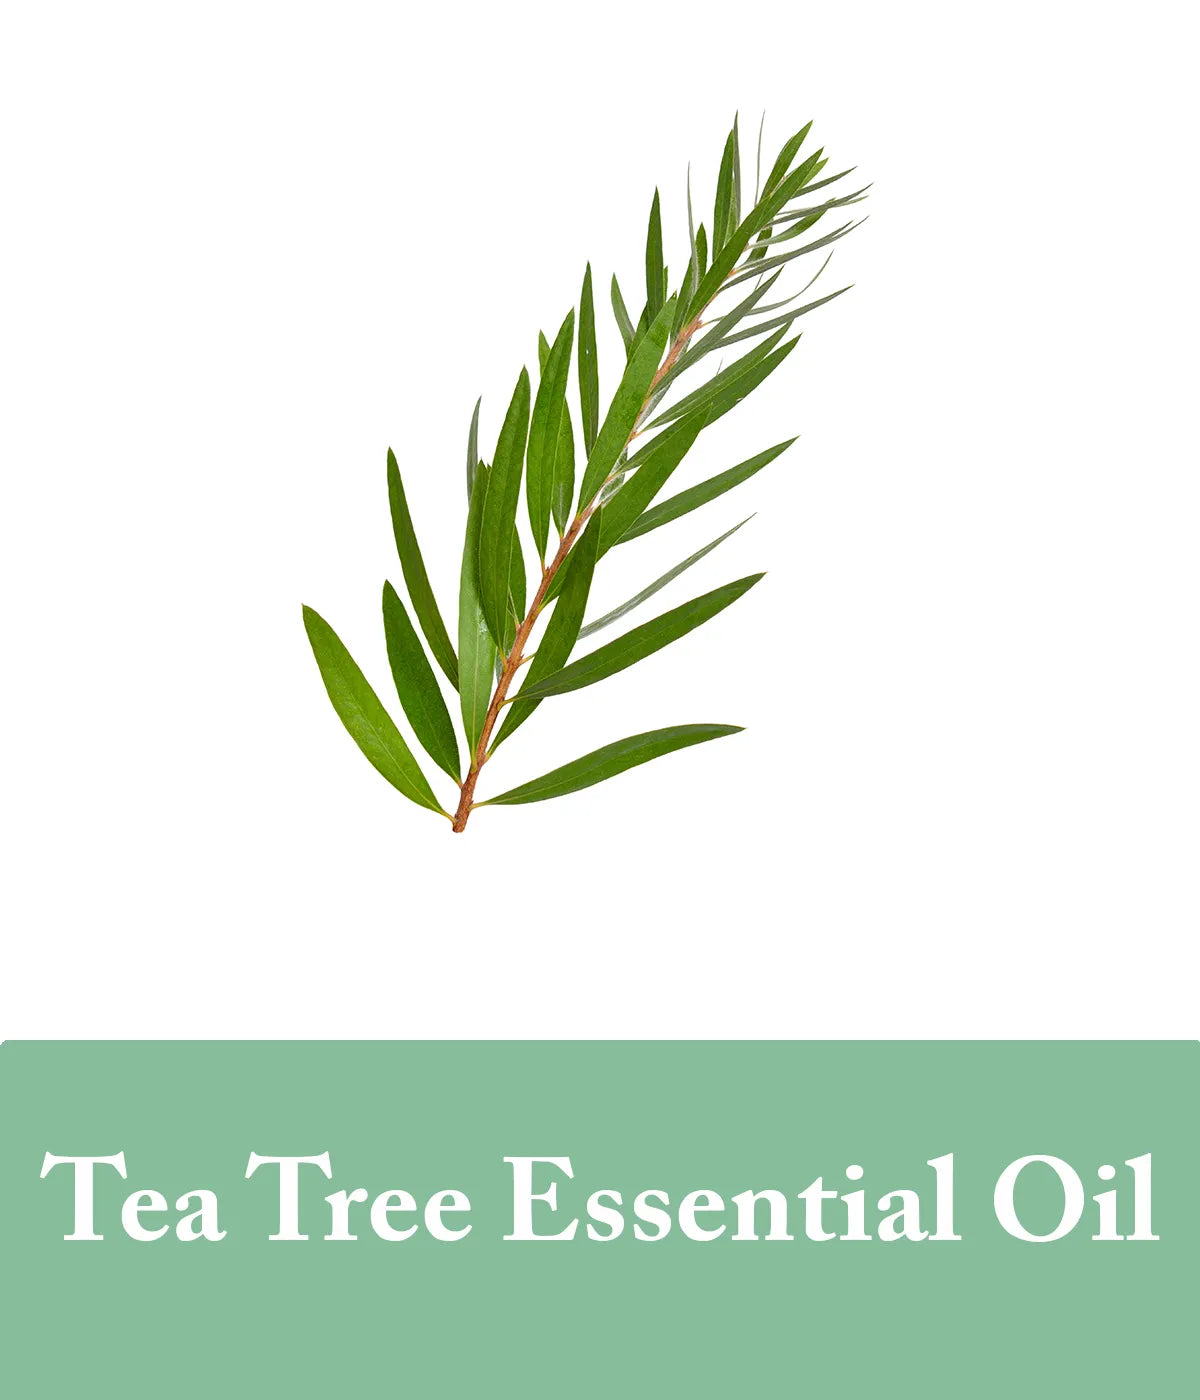 Tea Tree Essential Oils For Shampoo